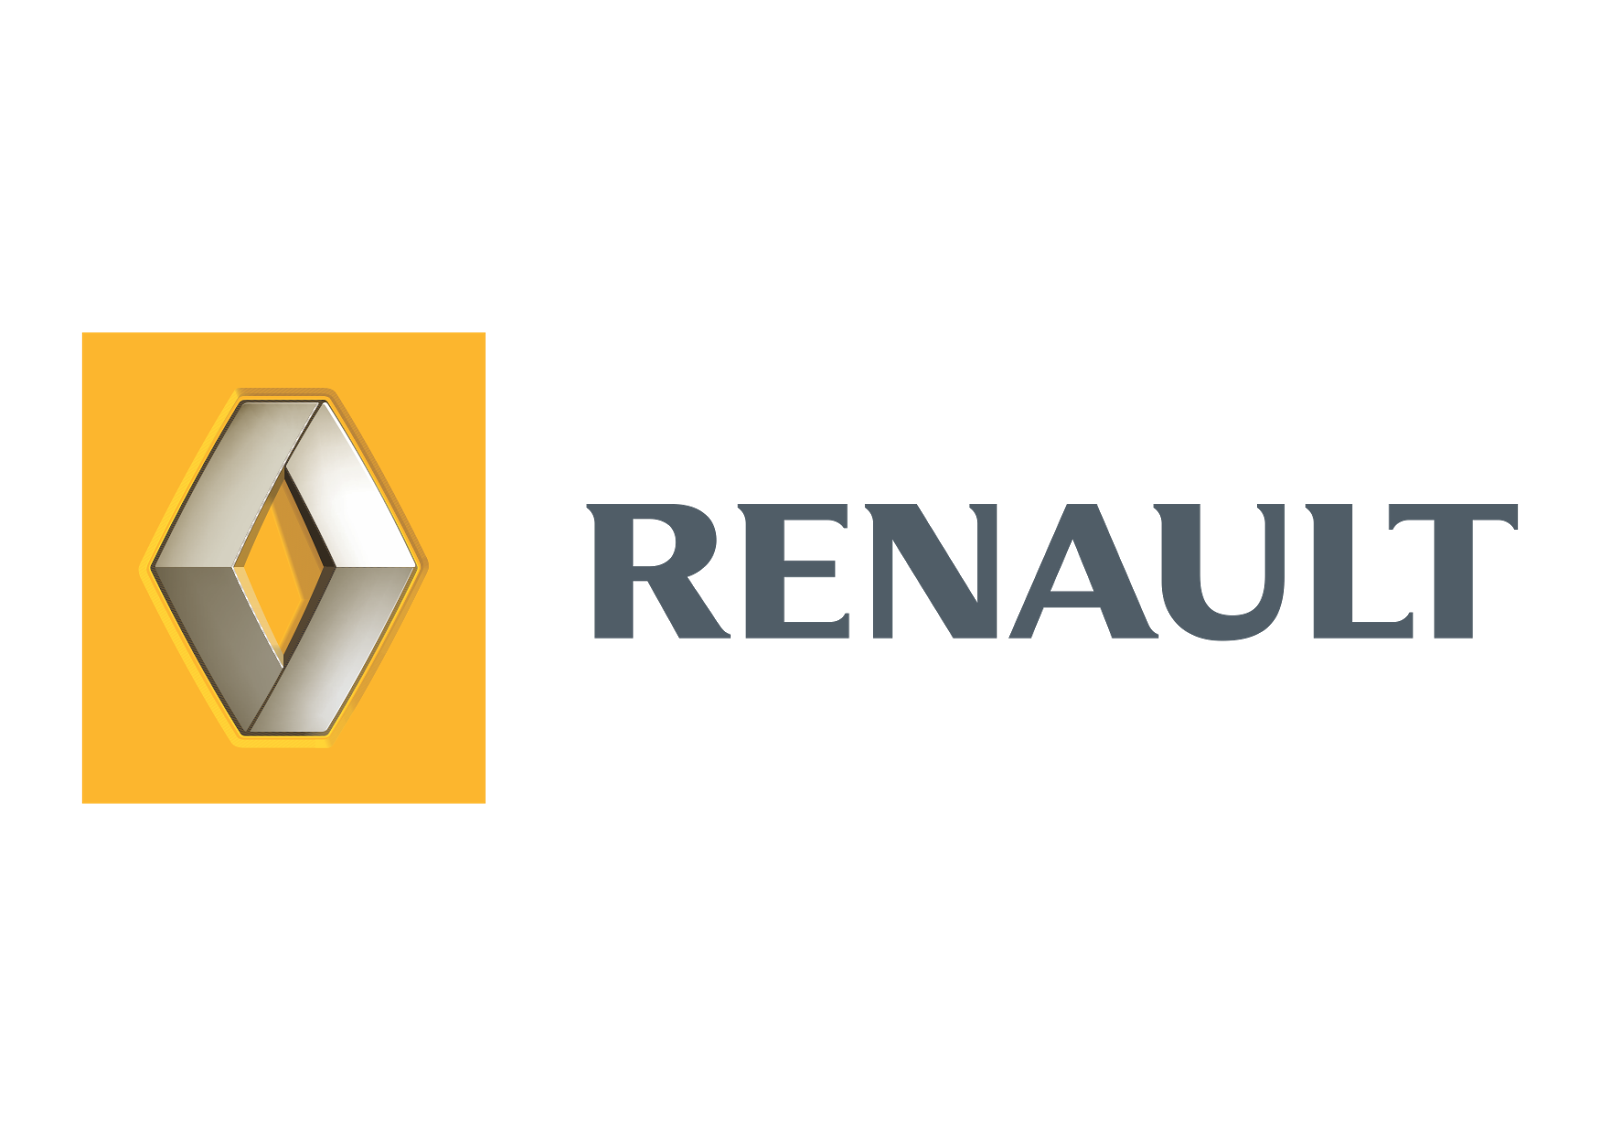 Renault Vector PNG - 111240